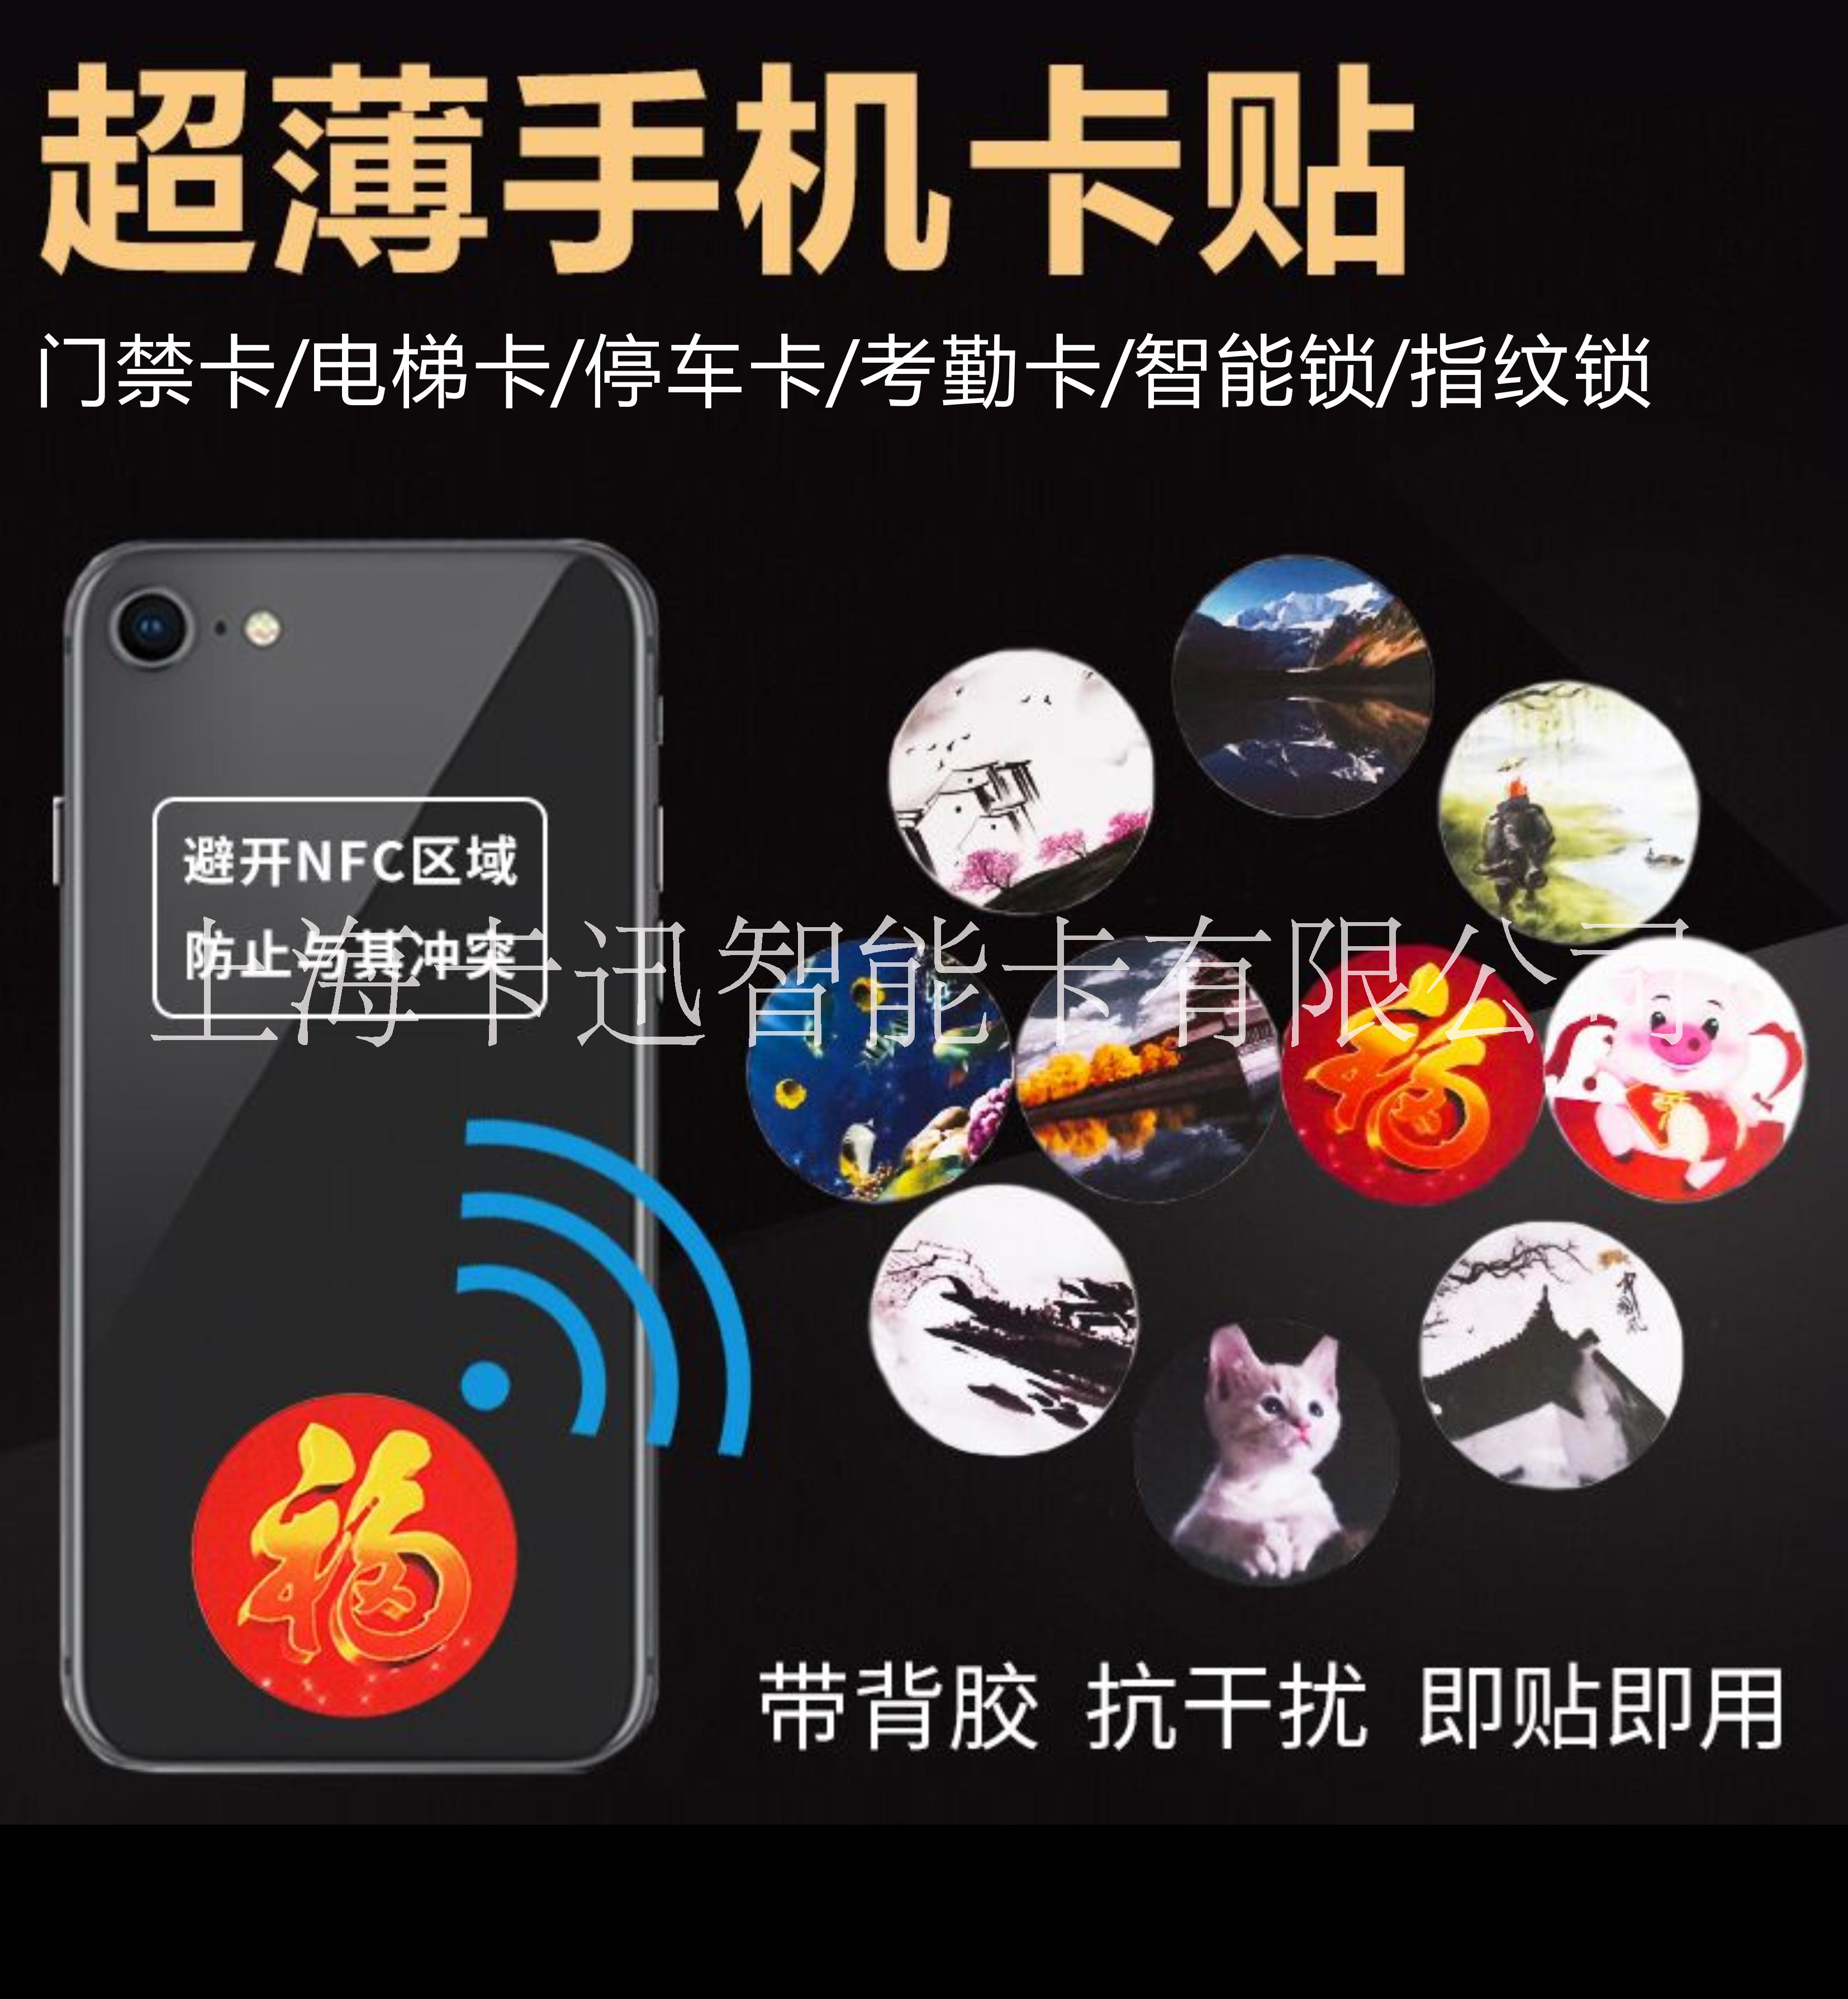 抗金属手机感应贴卡超薄使用方便快捷定制上海卡迅制卡021-51697615图片